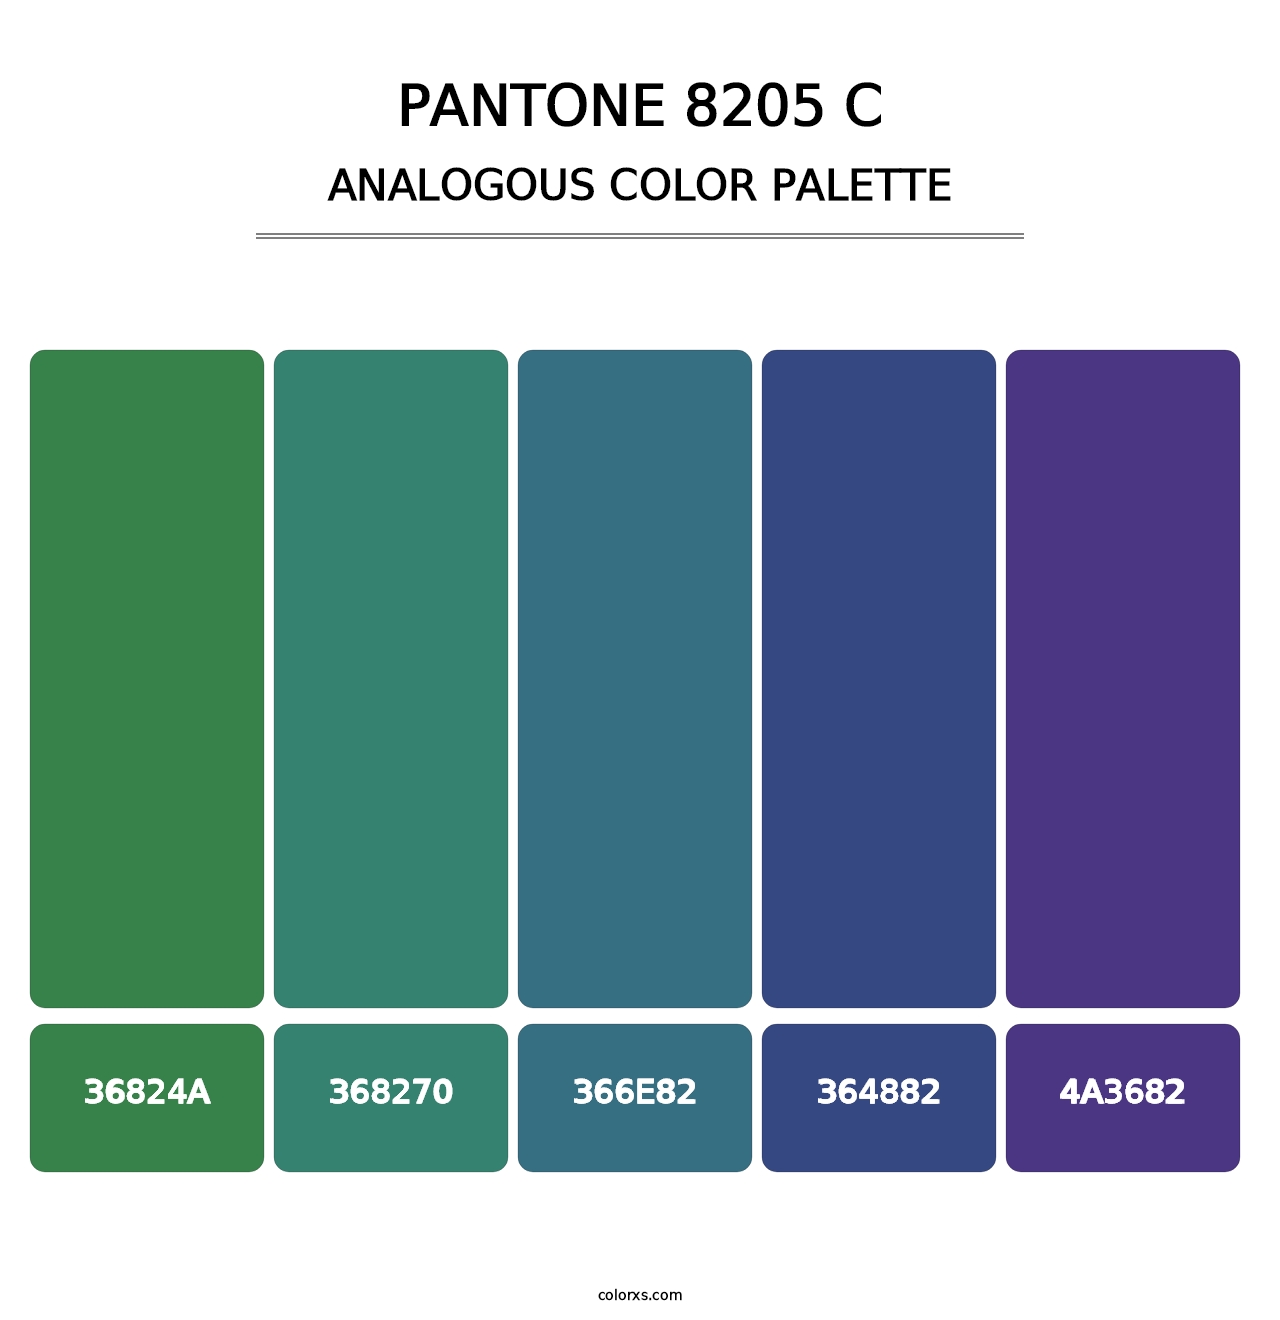 PANTONE 8205 C - Analogous Color Palette